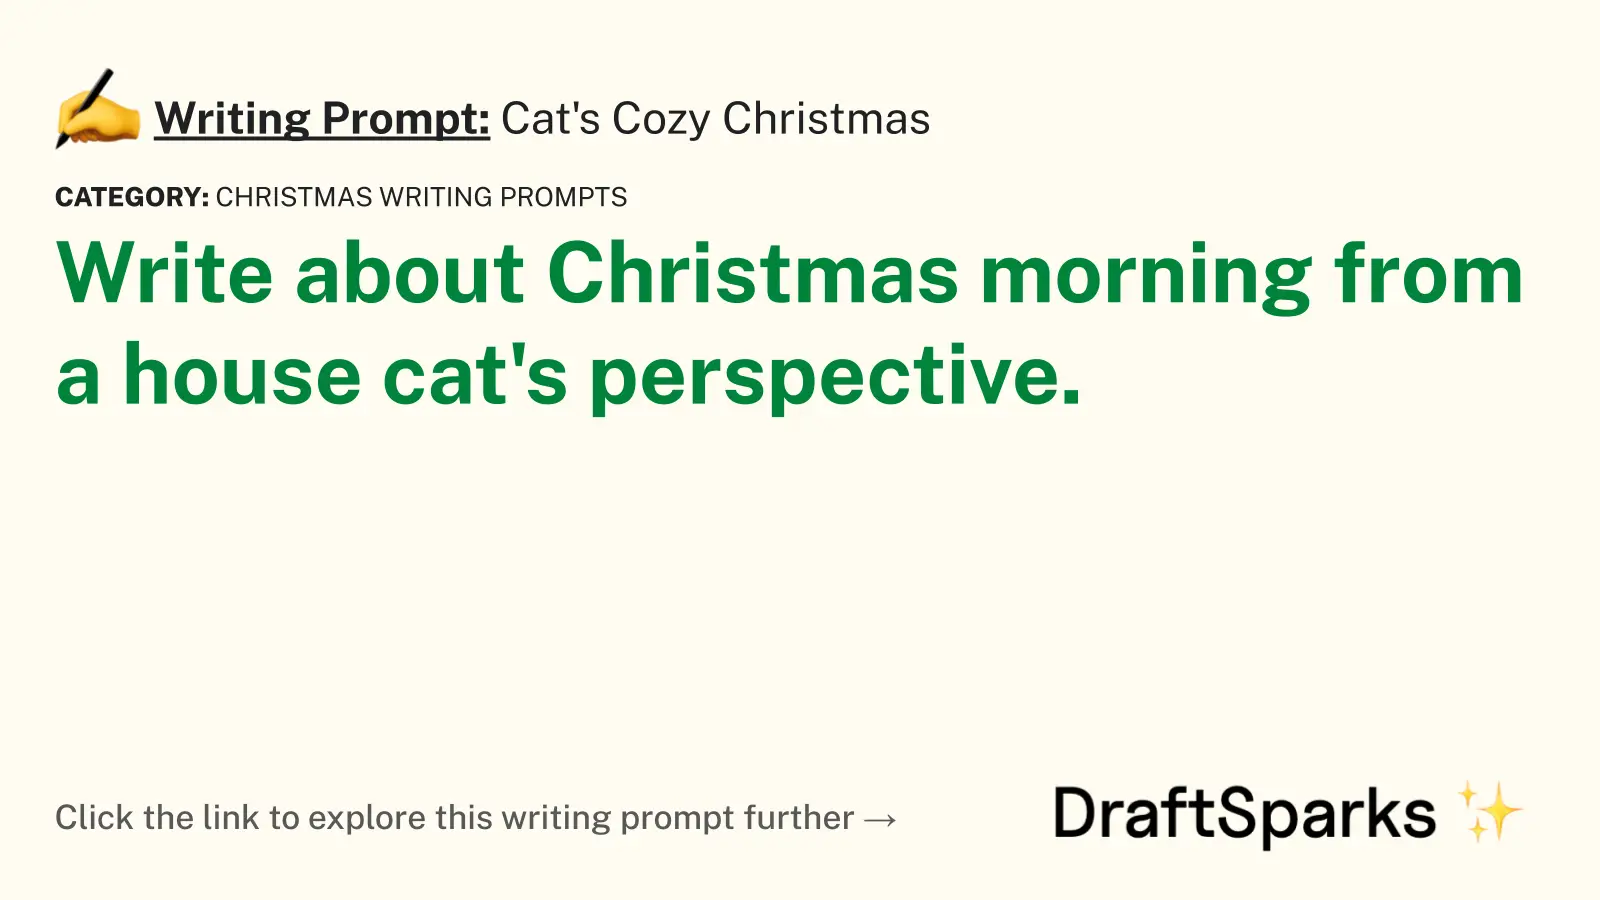 Cat’s Cozy Christmas